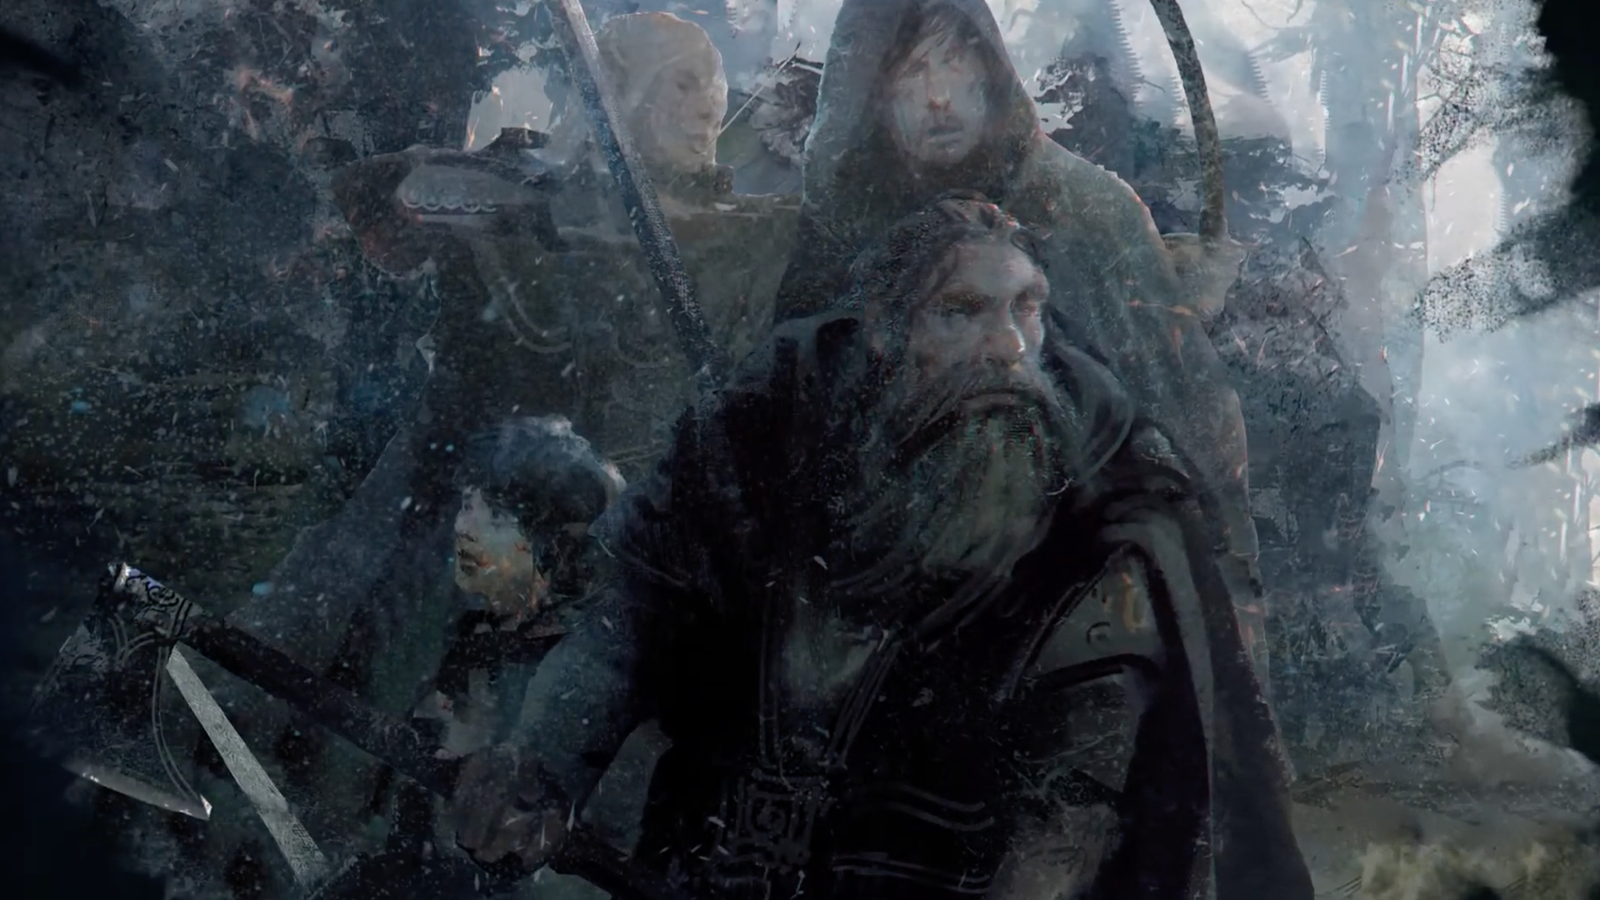 Battle of Five Armies - Tolkien Gateway